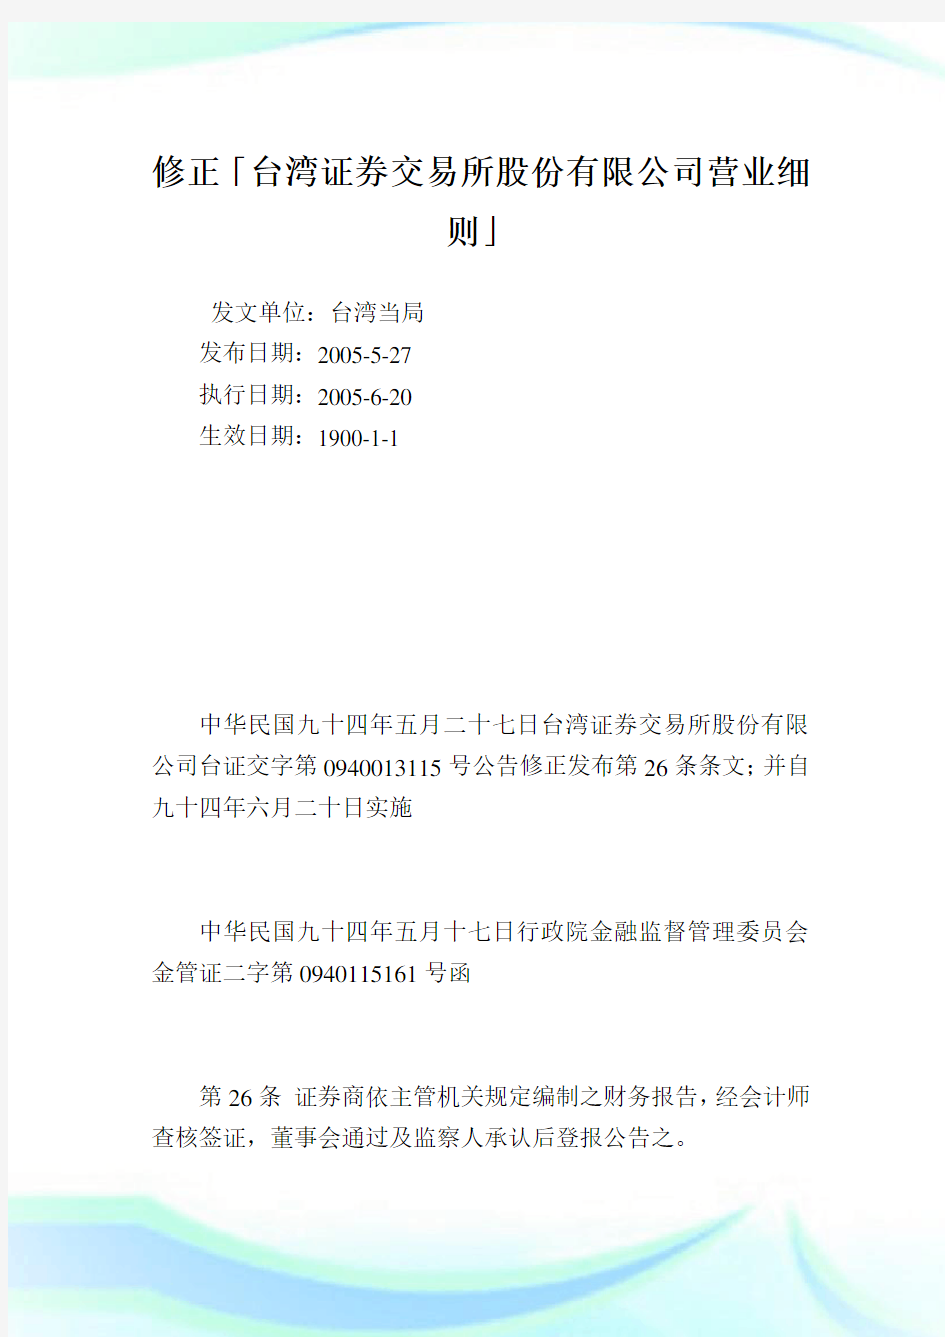 修正「台湾证券交易所股份有限公司营业细则」_1110完整篇.doc